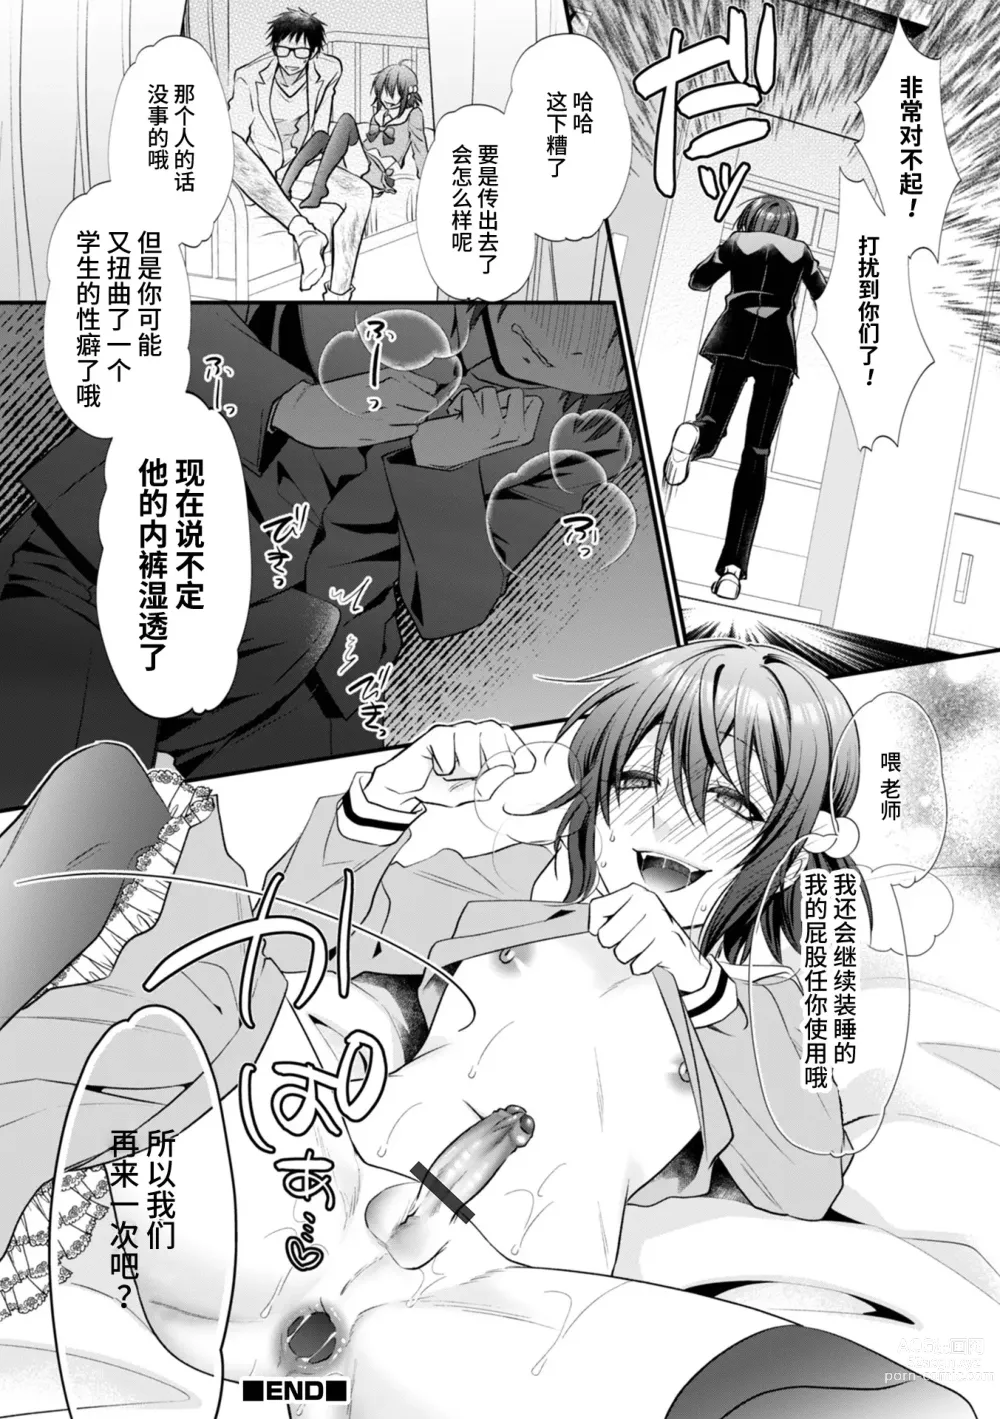 Page 16 of manga Hatsujou Nemuri Hime - Estrus sleeping princess